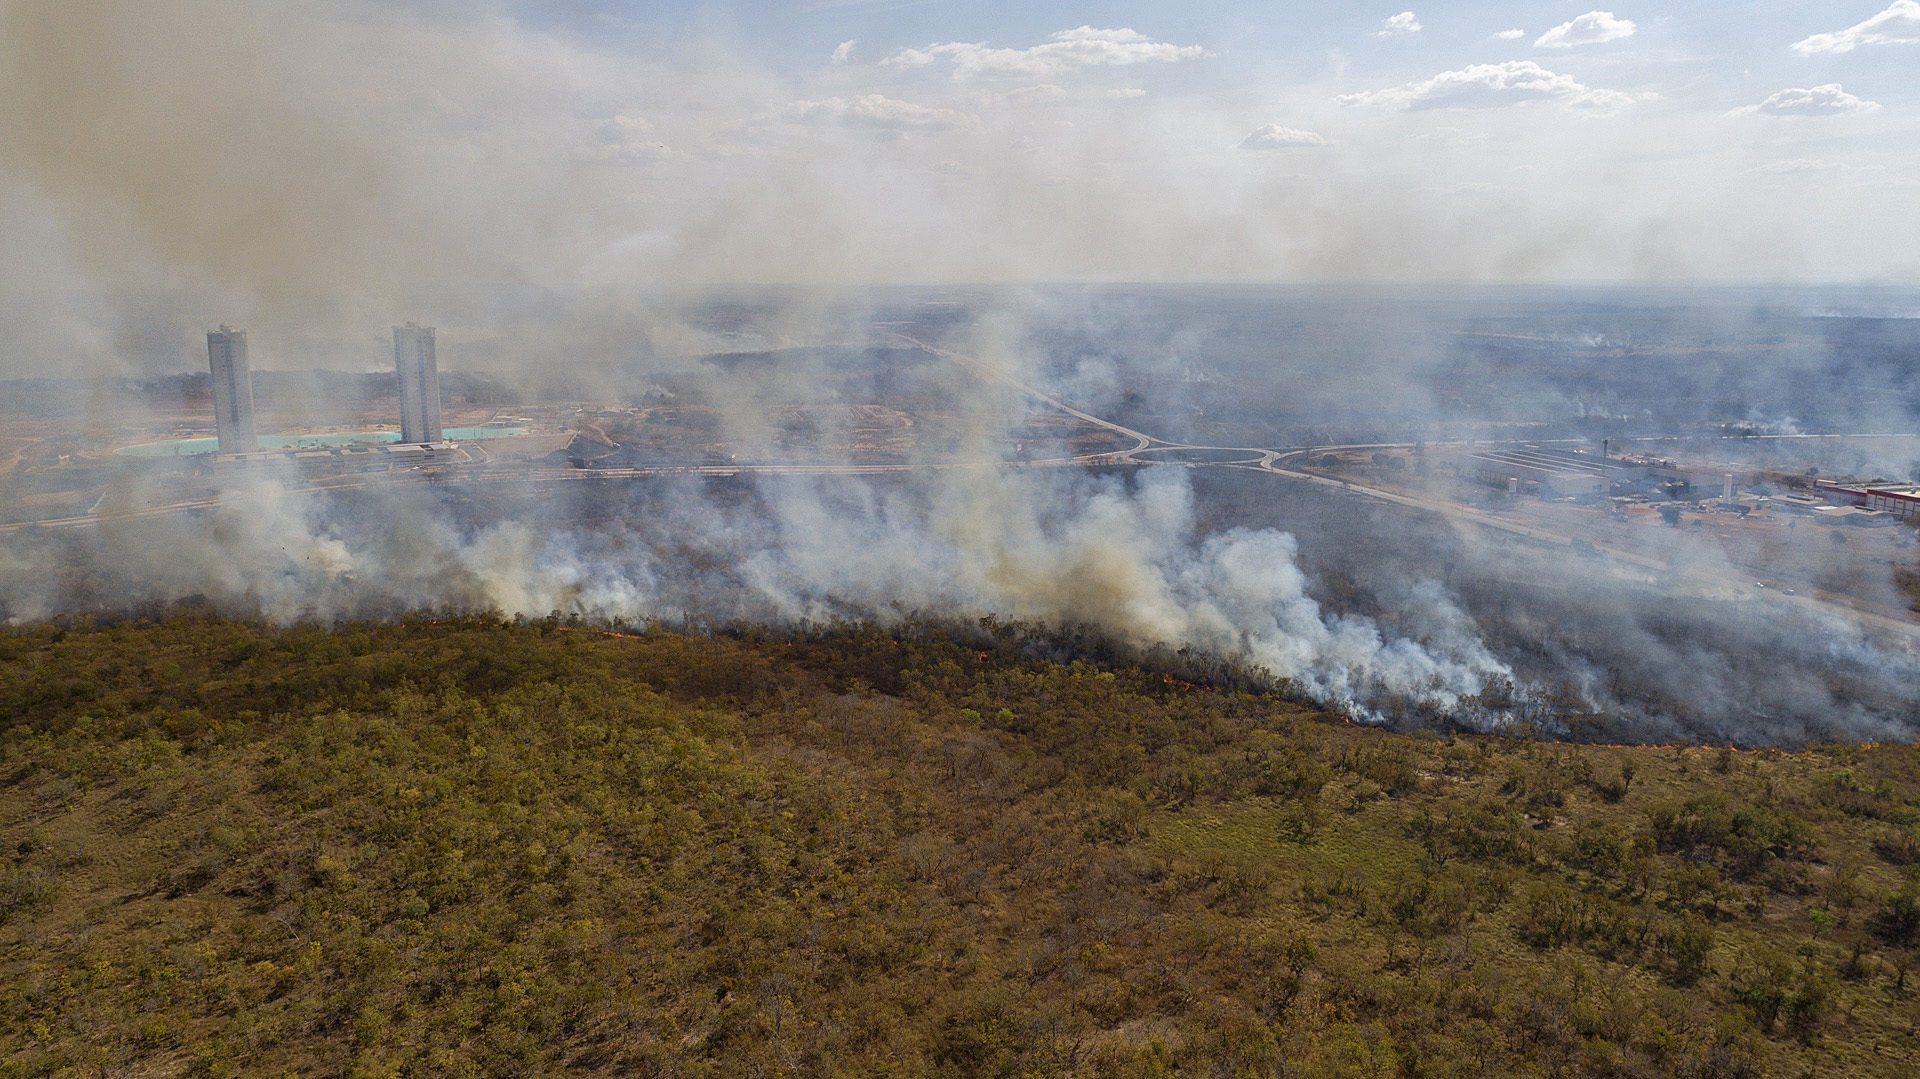 Los científicos aseguraron que aclarar el vínculo entre las tendencias de incendios forestales y el cambio climático es fundamental para comprender futuras amenazas
EFE/ROGERIO FLORENTINO/Archivo
